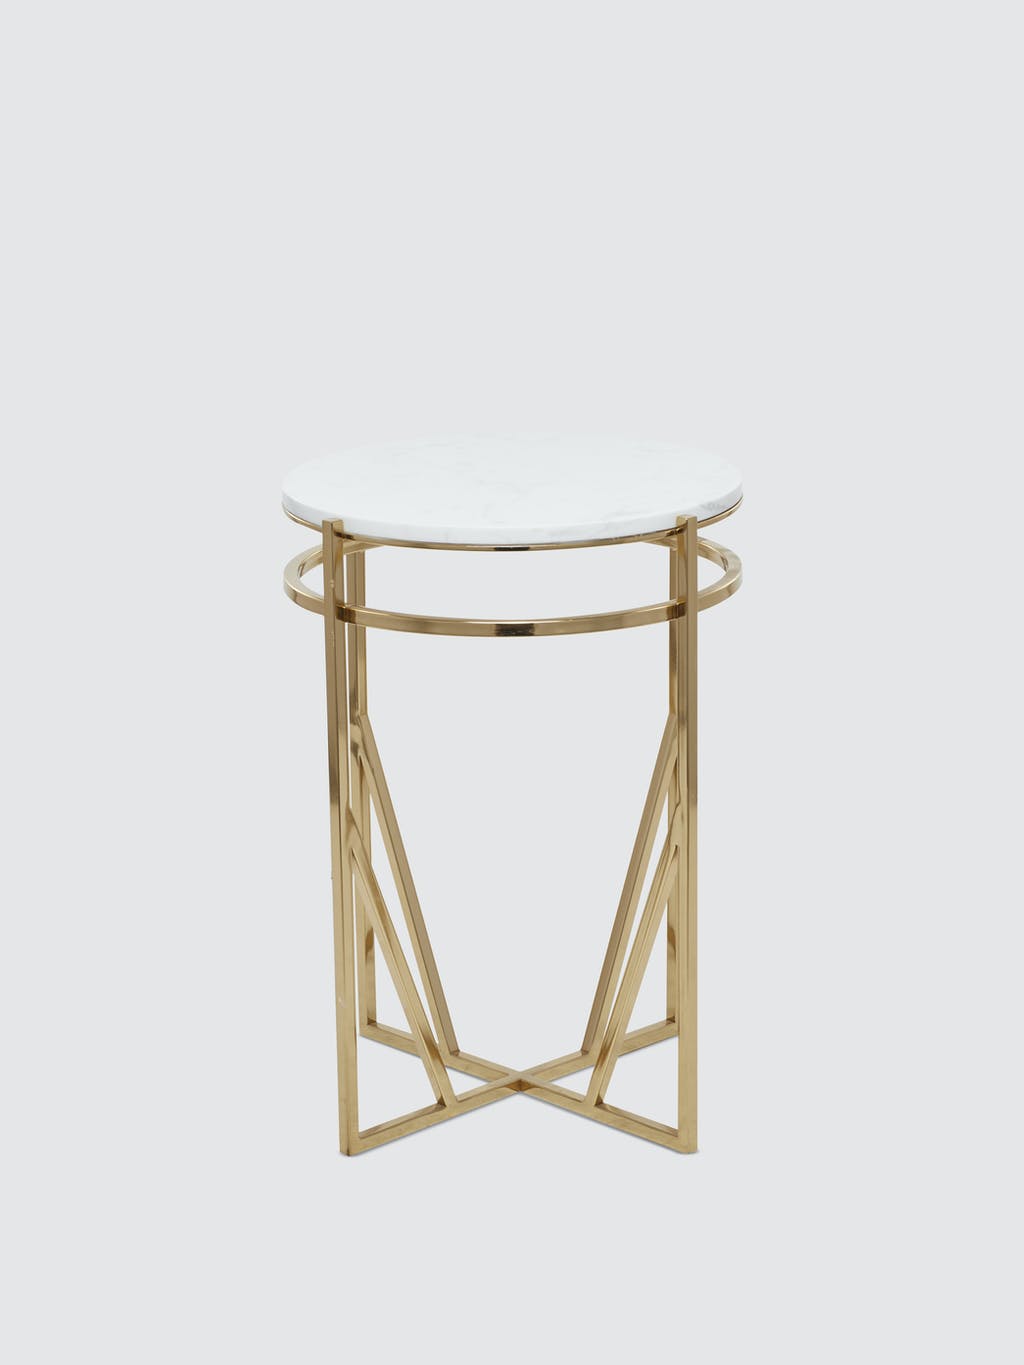 Round Metallic Pedestal Table